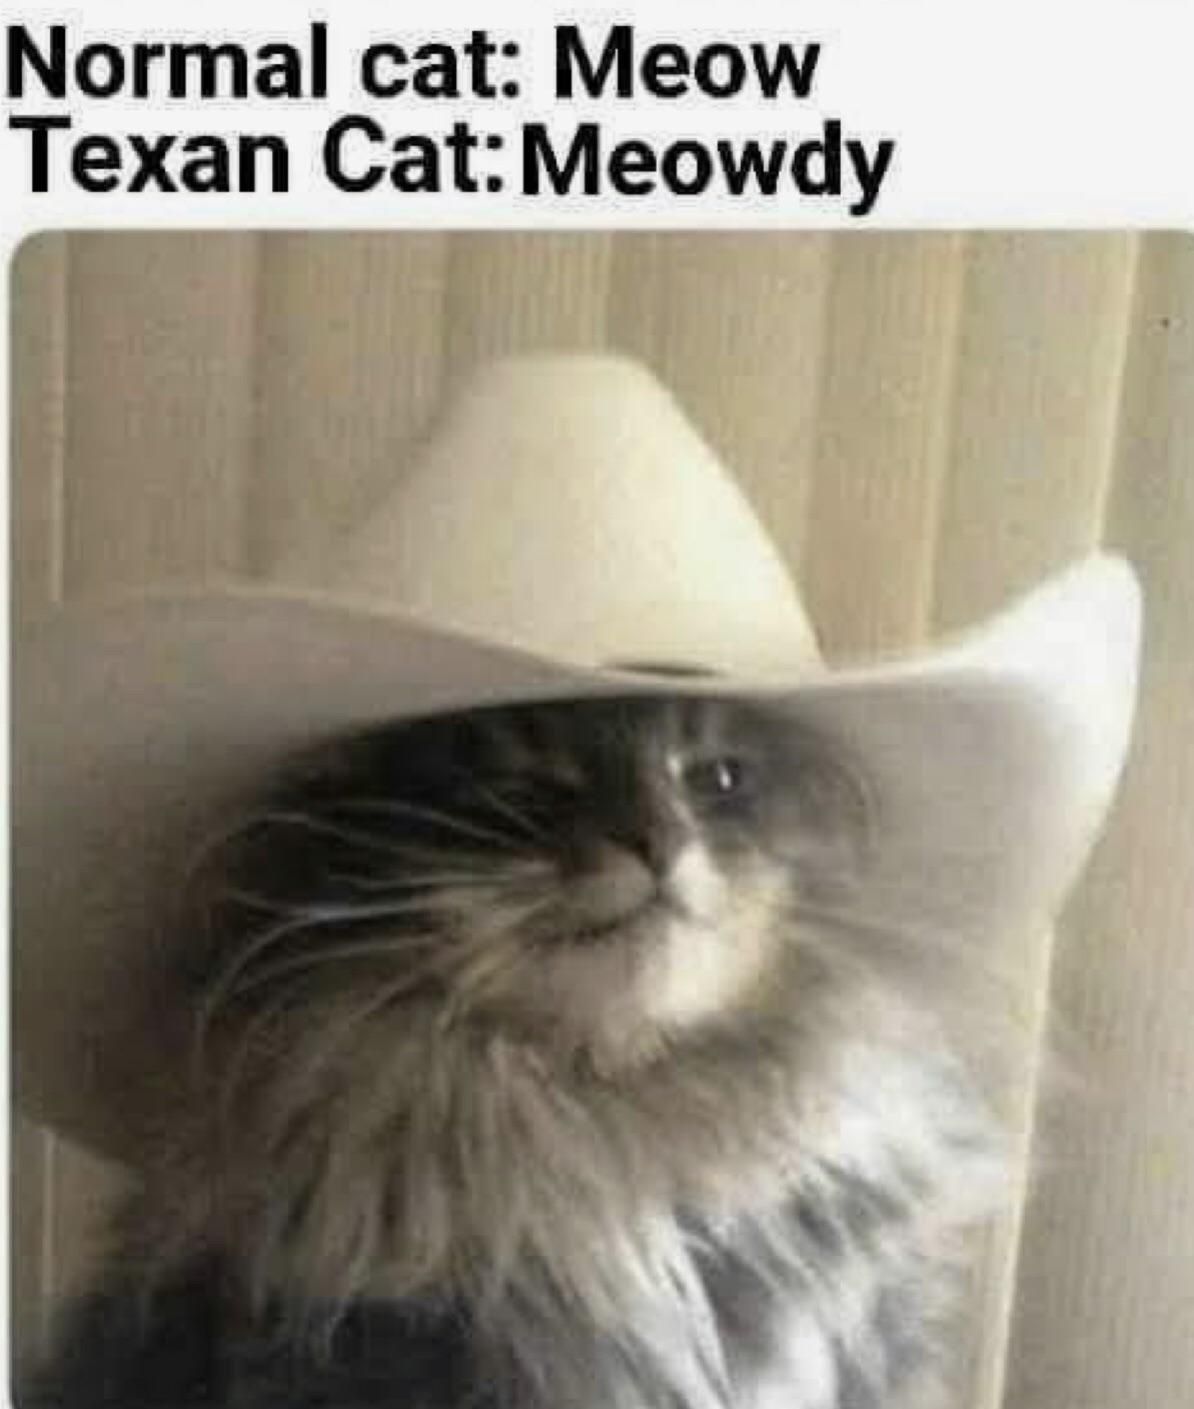 Howdy meowdy